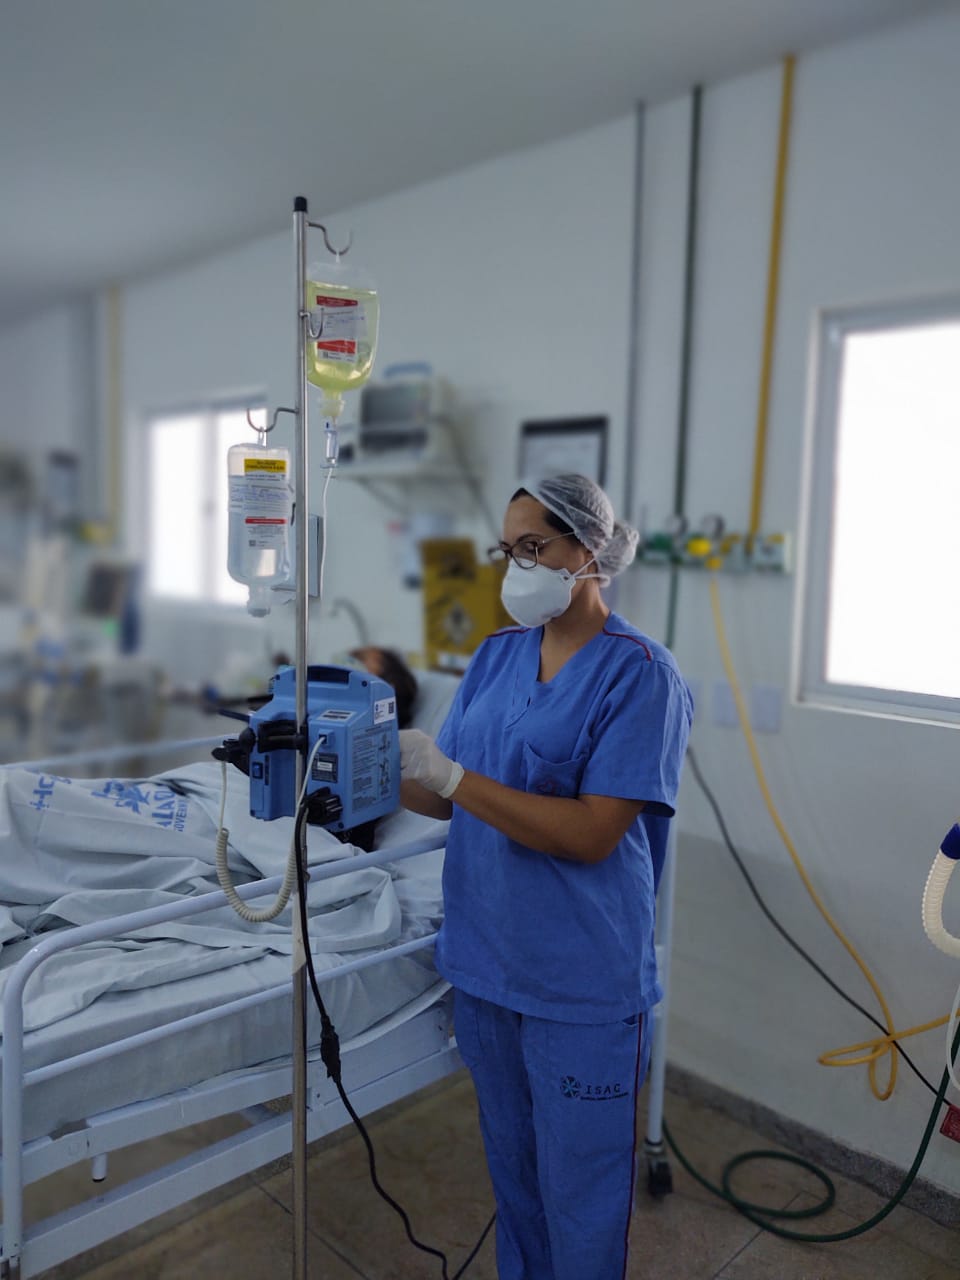 Uma mulher está de pé ao lado de um leito hospitalar. Ela usa fardamento azul, está de máscara, touca e luvas. A mesma maneja um aparelho hospitalar.